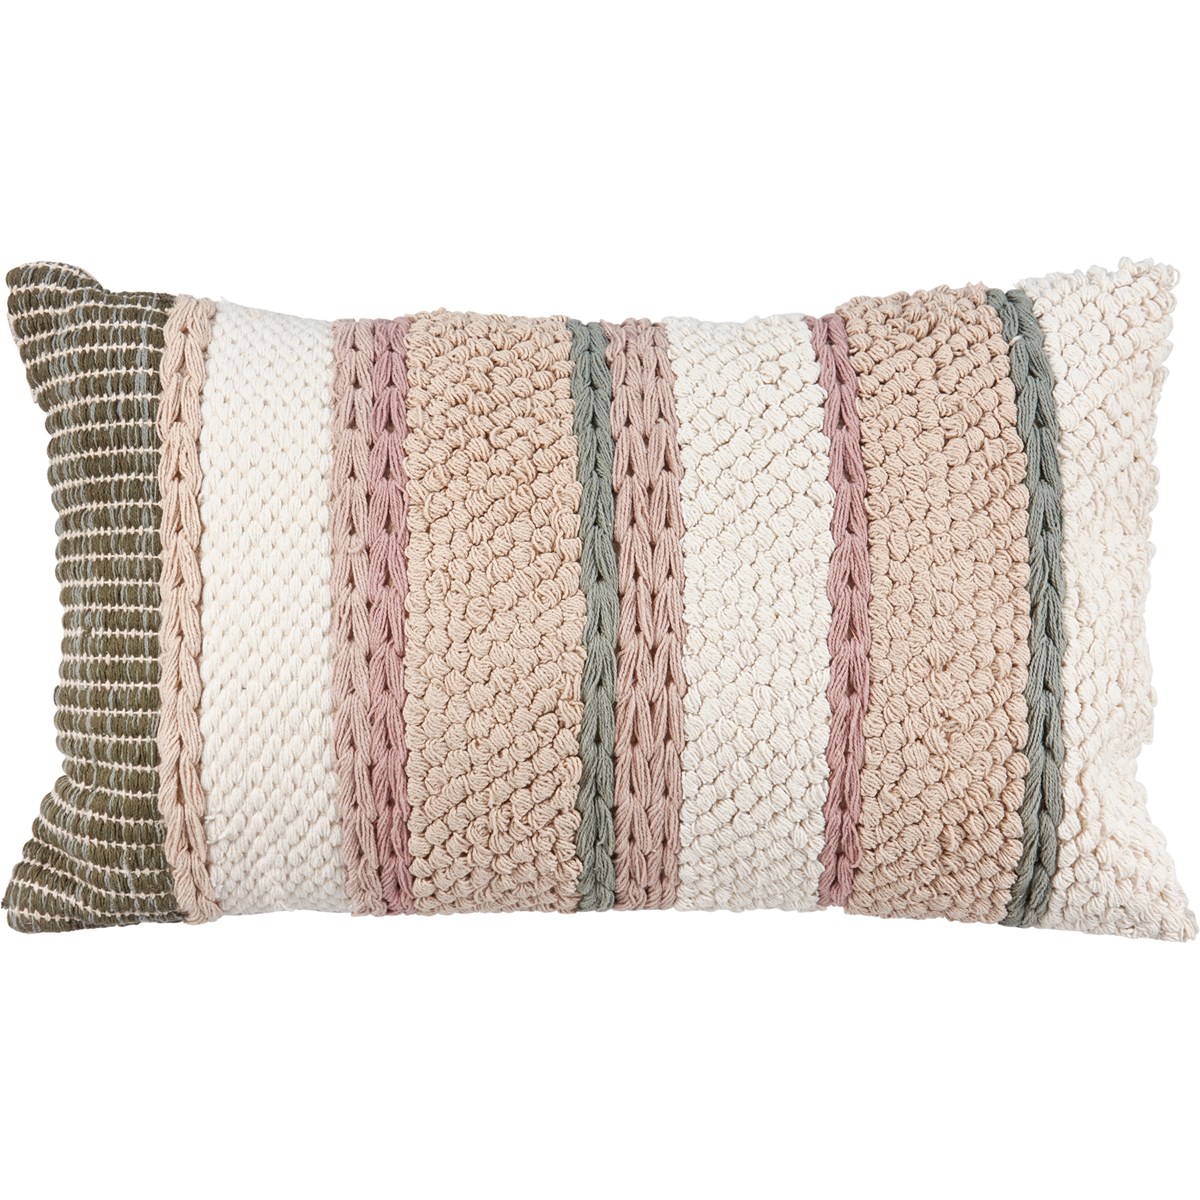 Striped Cottage Pillow - Cotton, Zipper